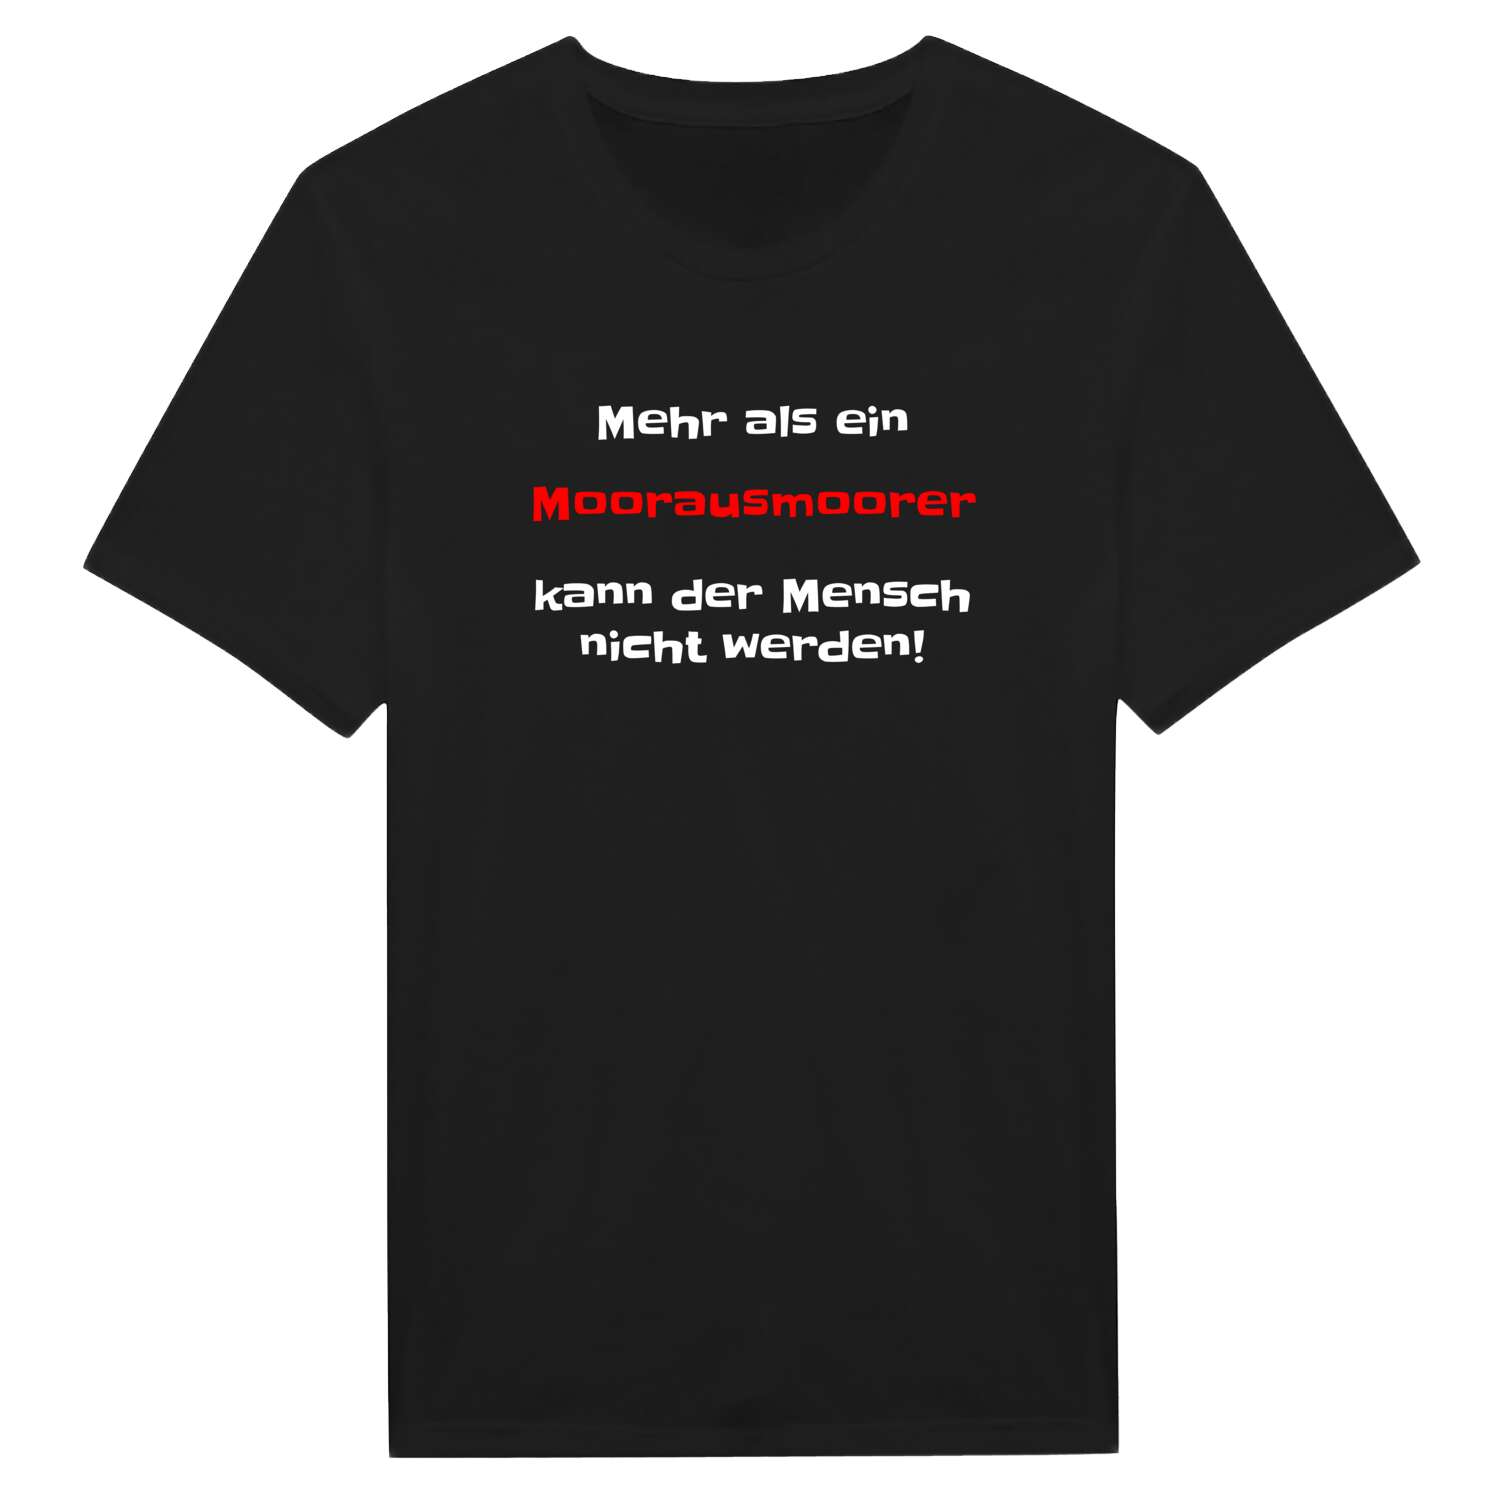 Moorausmoor T-Shirt »Mehr als ein«